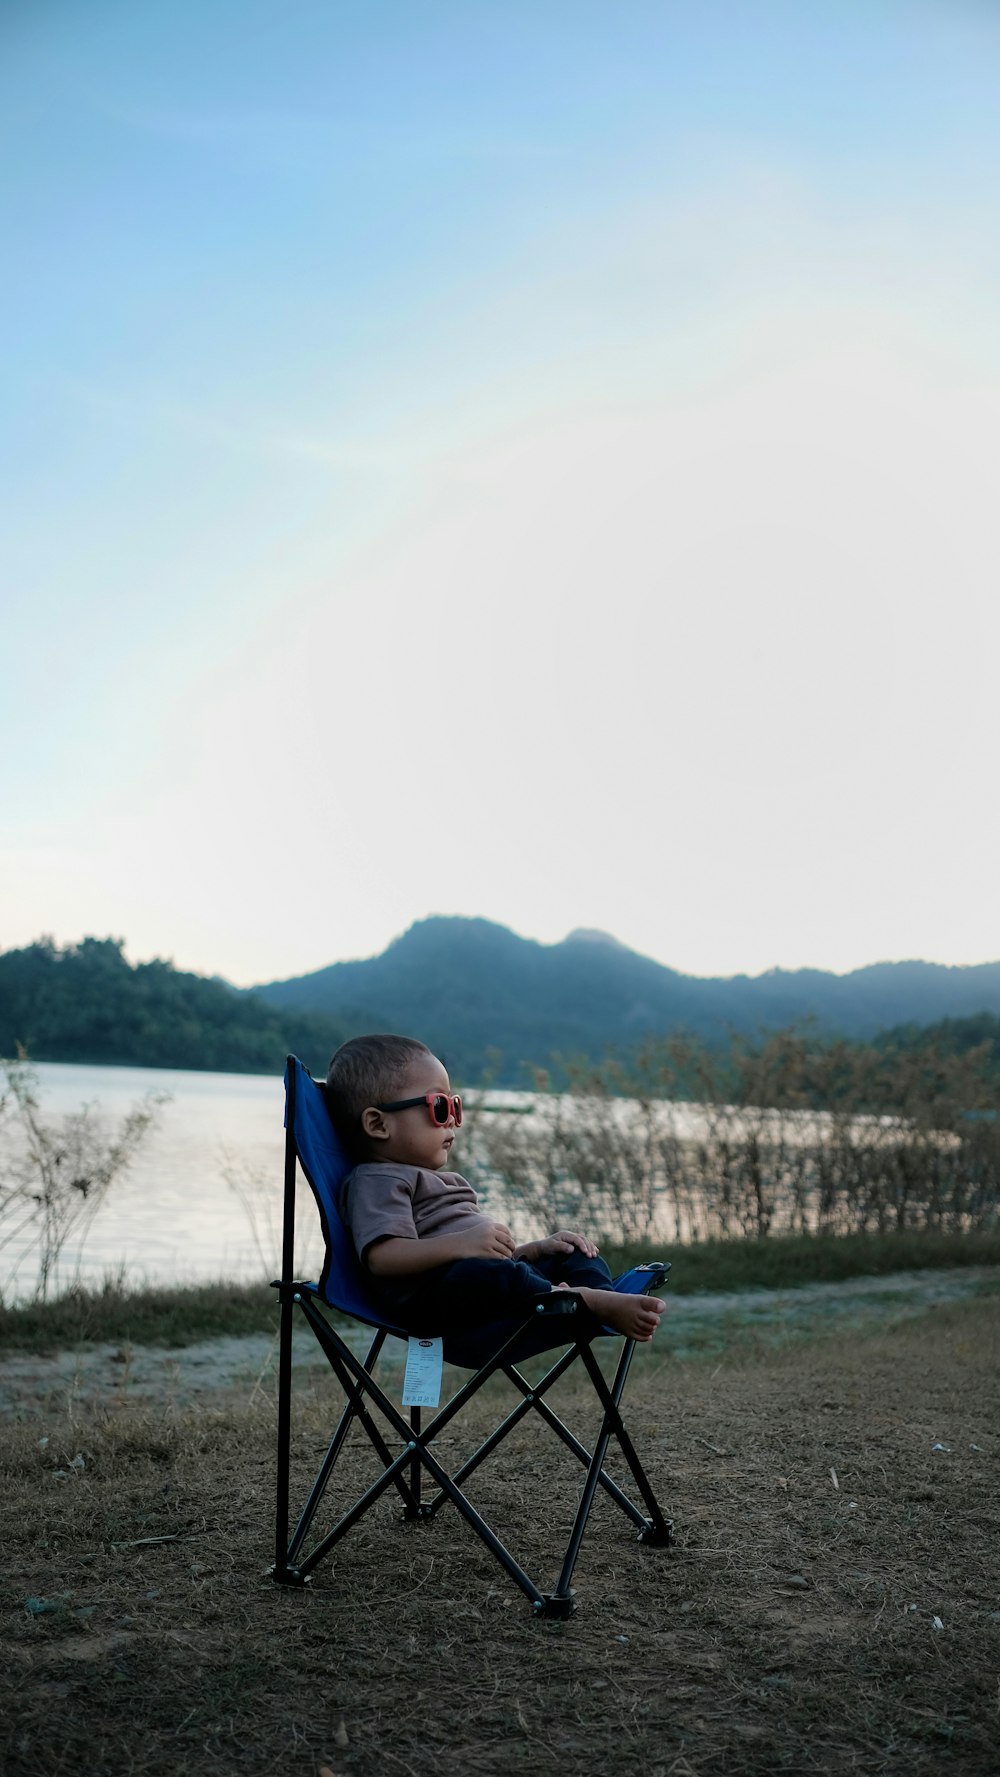 Enfant en bas âge assis sur une chaise de camping noire et bleue